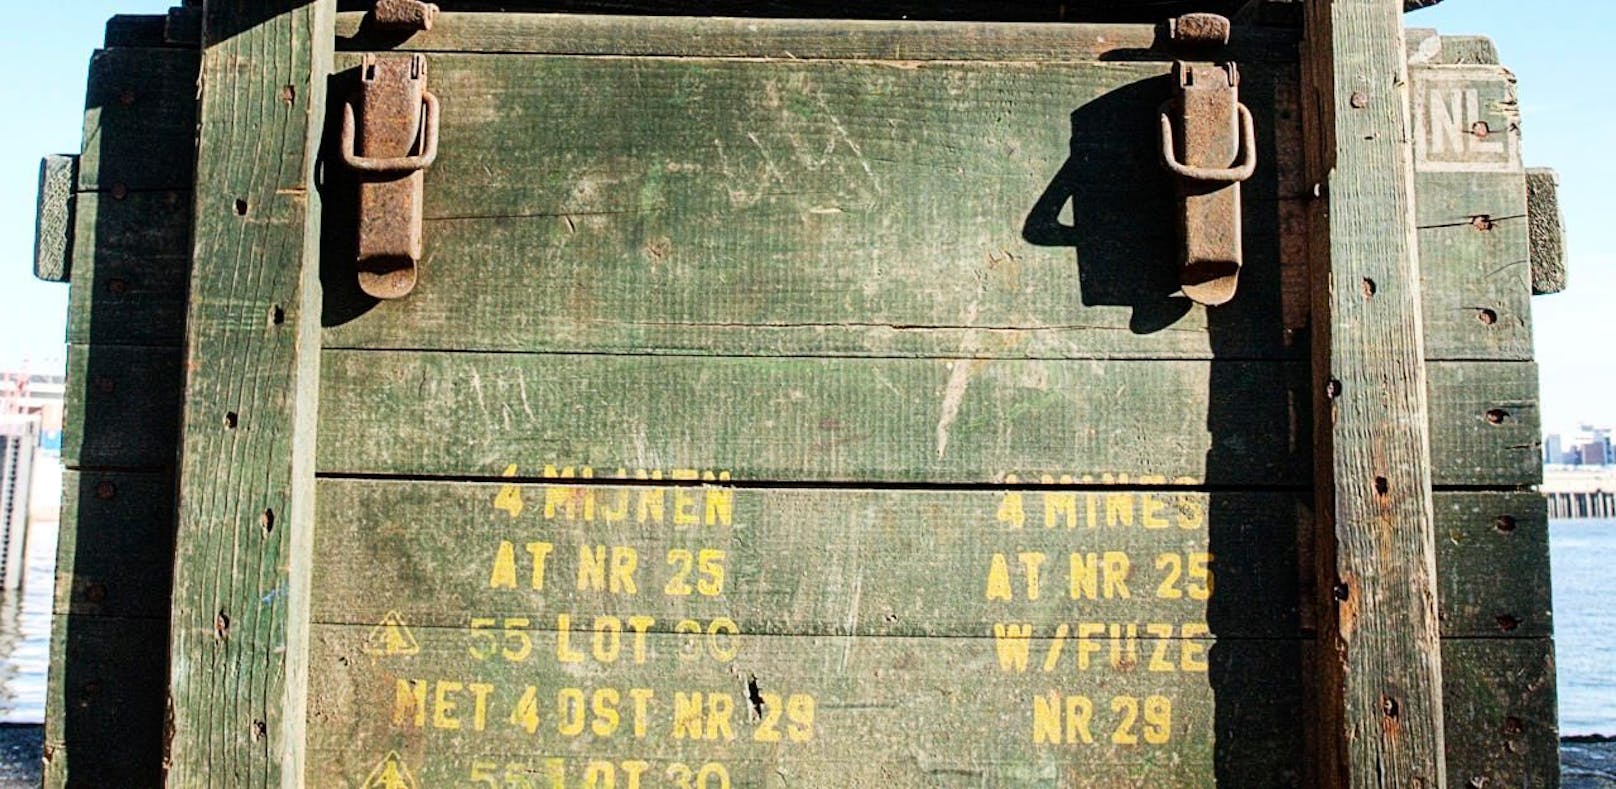 In den Munitionskisten lagerten 40 Kilogramm C4-Sprengstoff. 